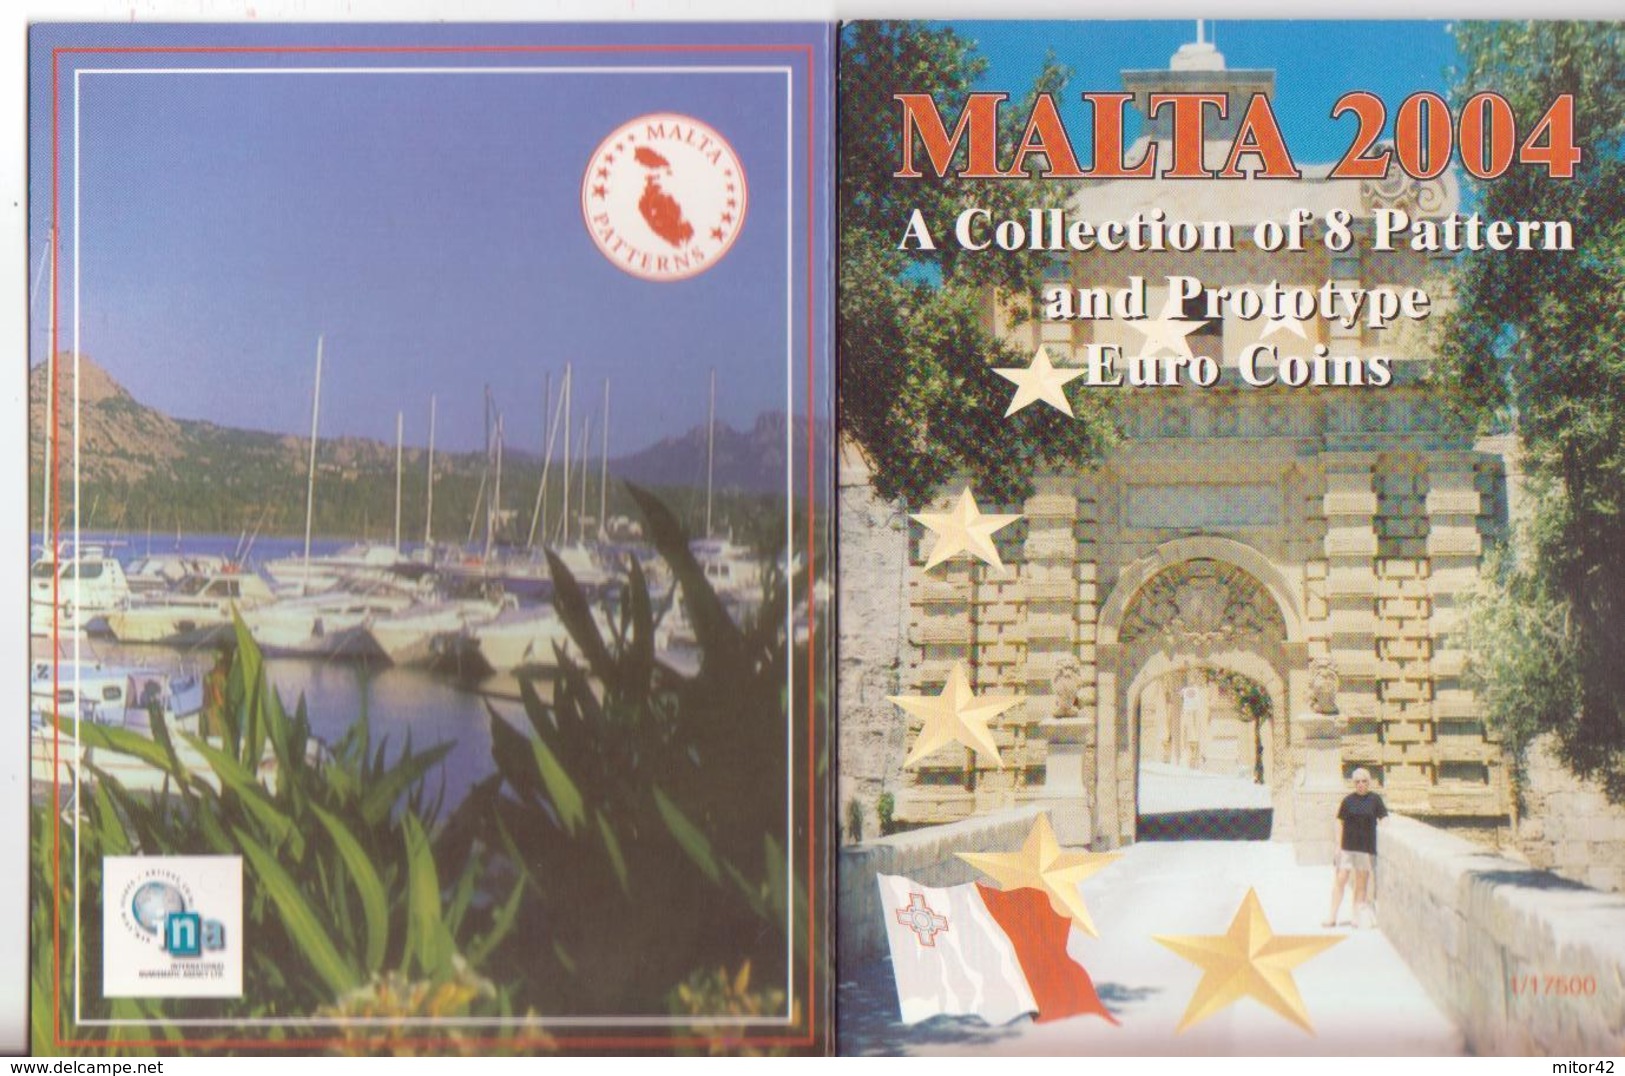 Malta-Malte-2004-Prova Euro-Divisionale 8 Valori-Try Euro-Test Euro - Private Proofs / Unofficial